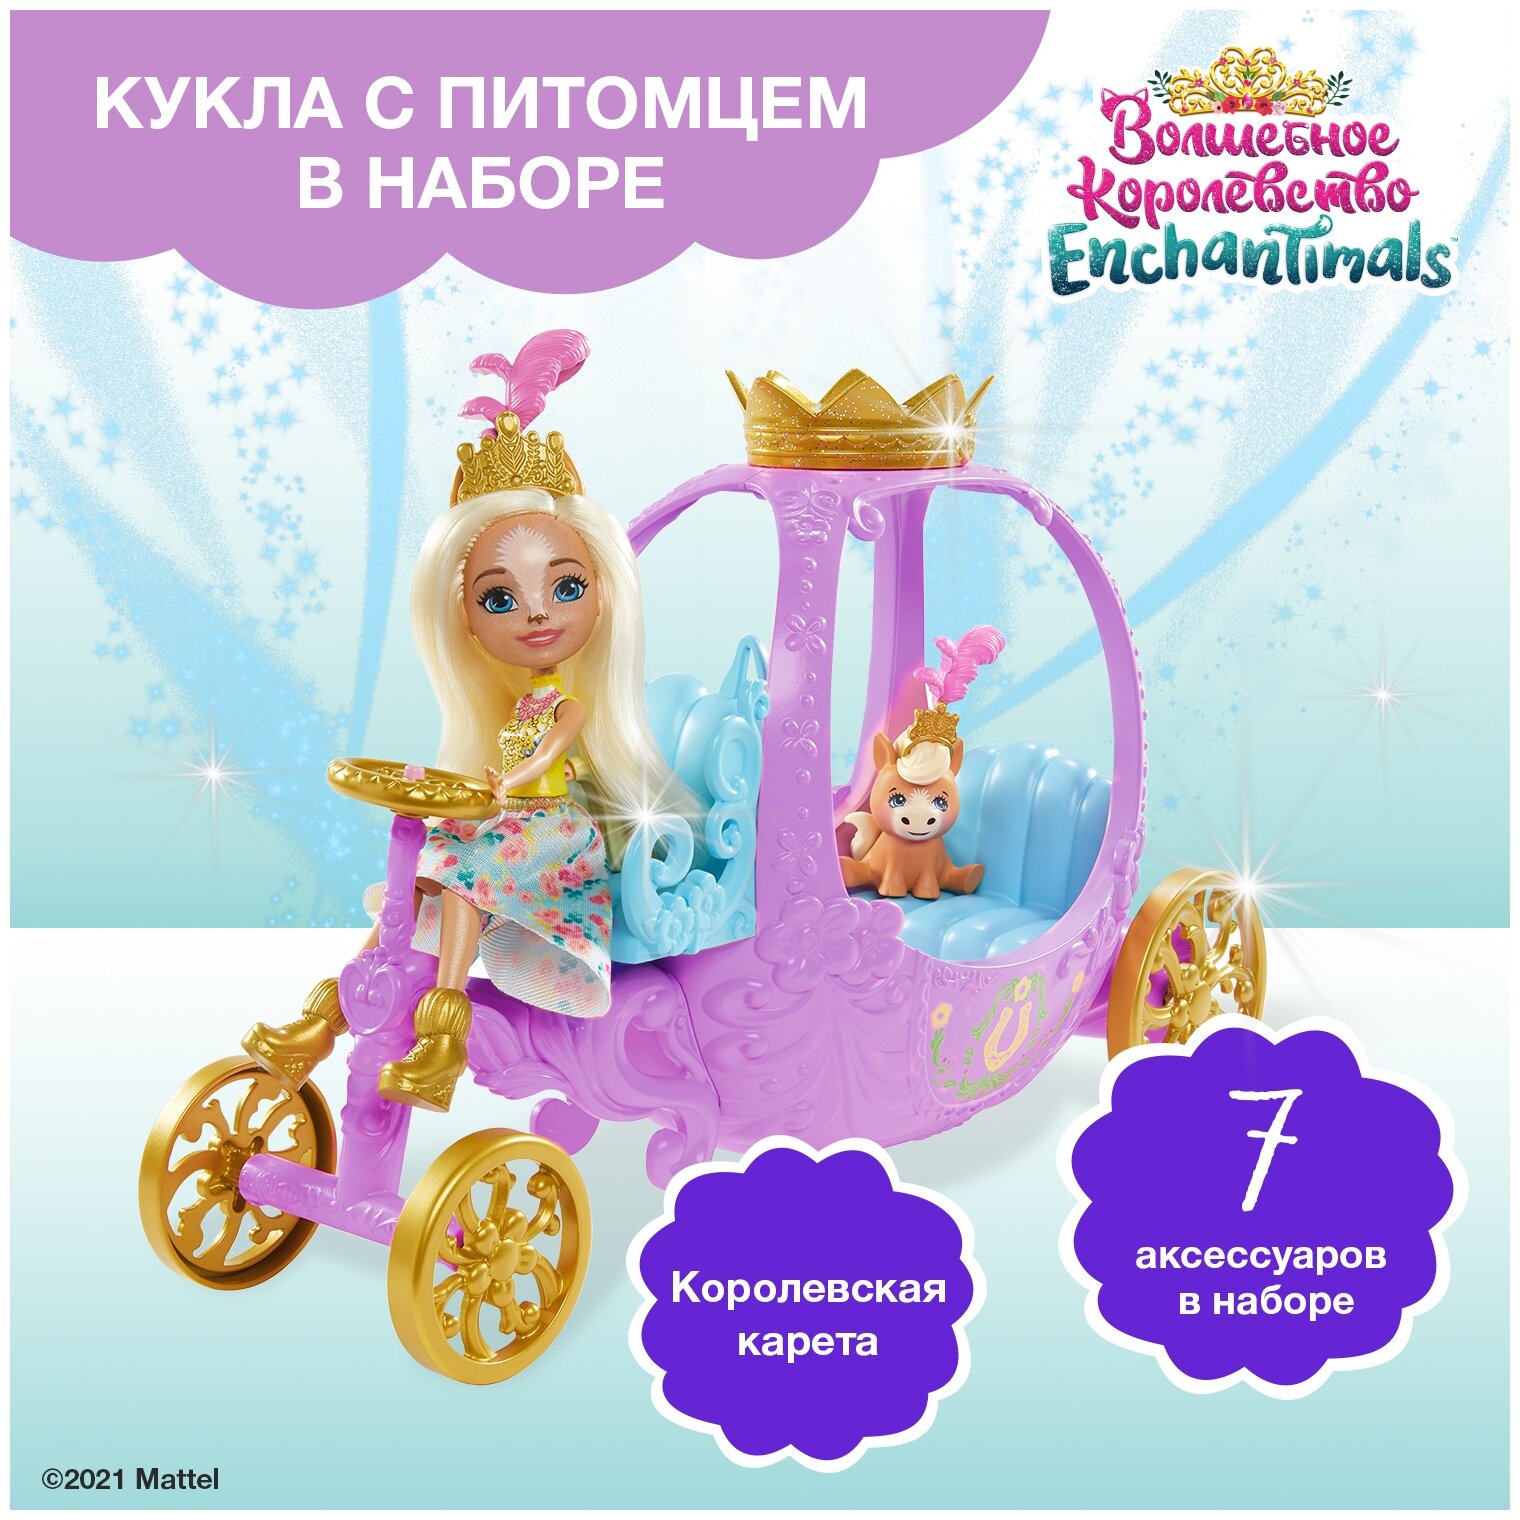 Enchantimals Игровой набор "Королевская карета" - фото №3